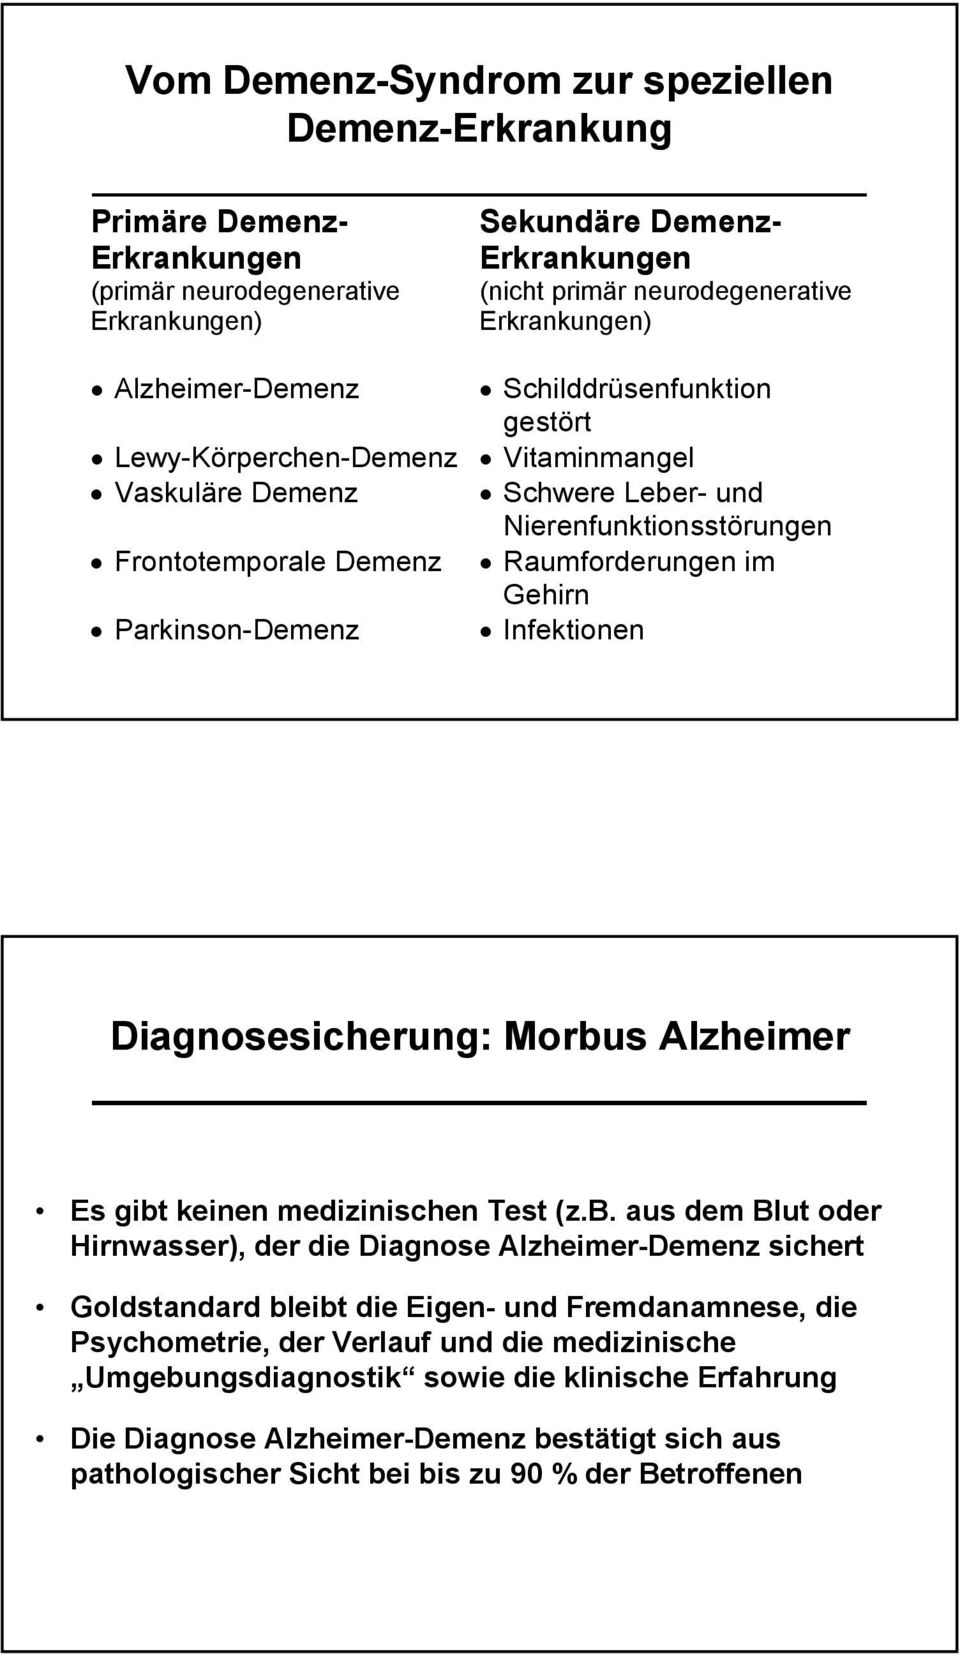 Parkinson-Demenz Infektionen Diagnosesicherung: Morbu